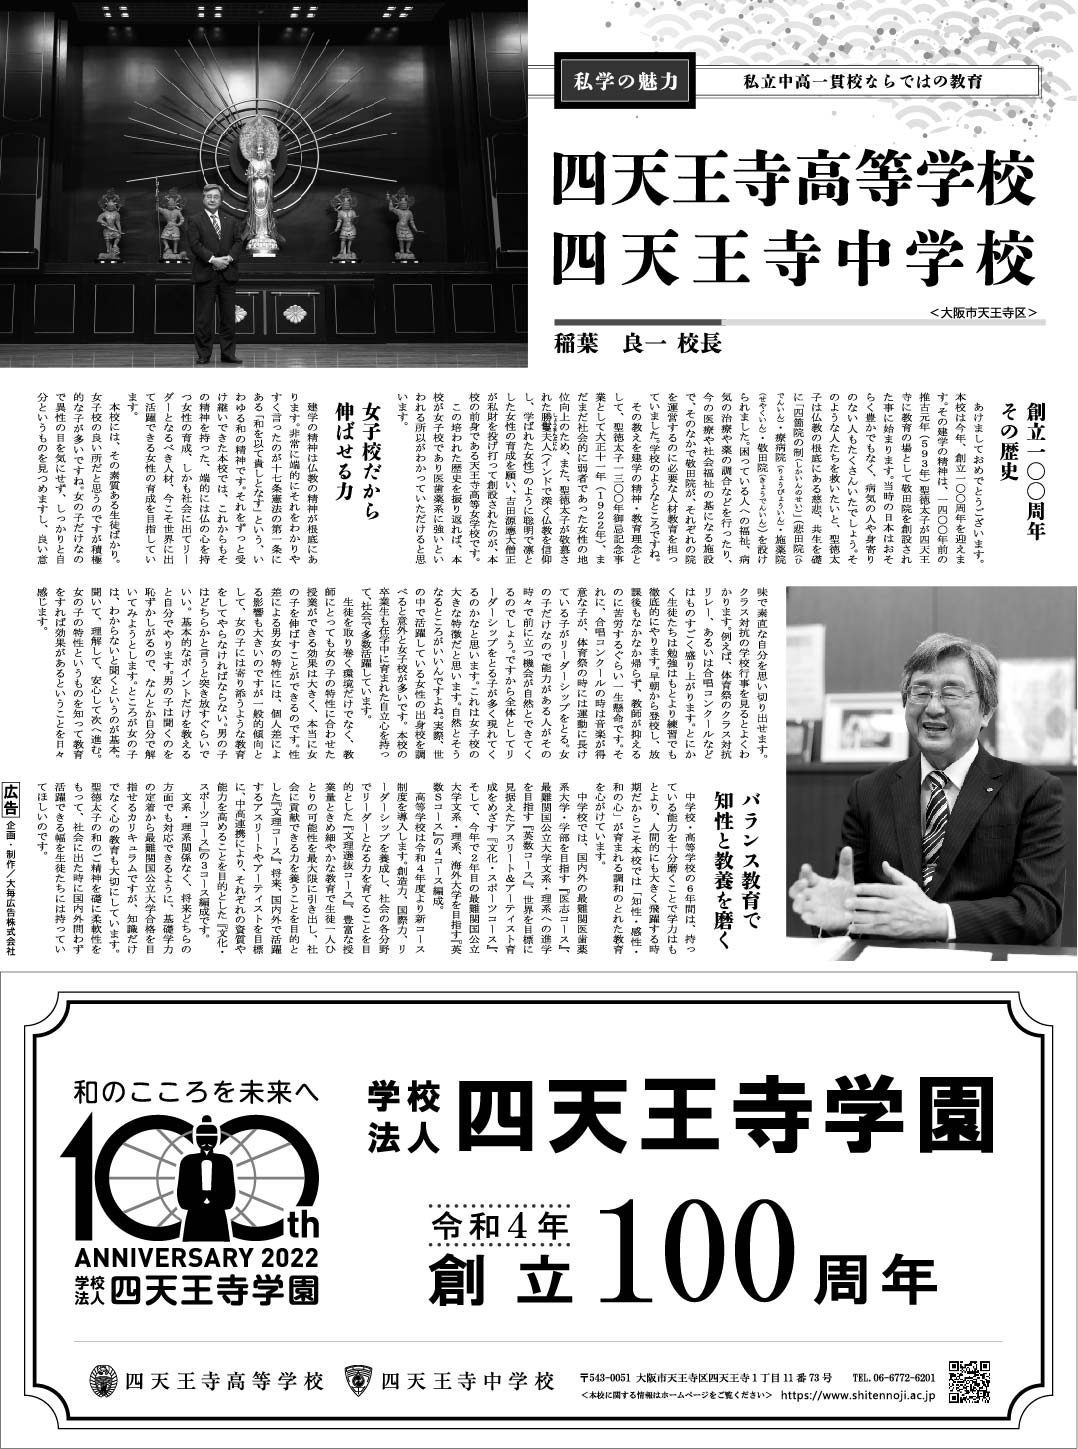 2022年1月1日毎日新聞に掲載された四天王寺高等学校・四天王寺中学校の記事